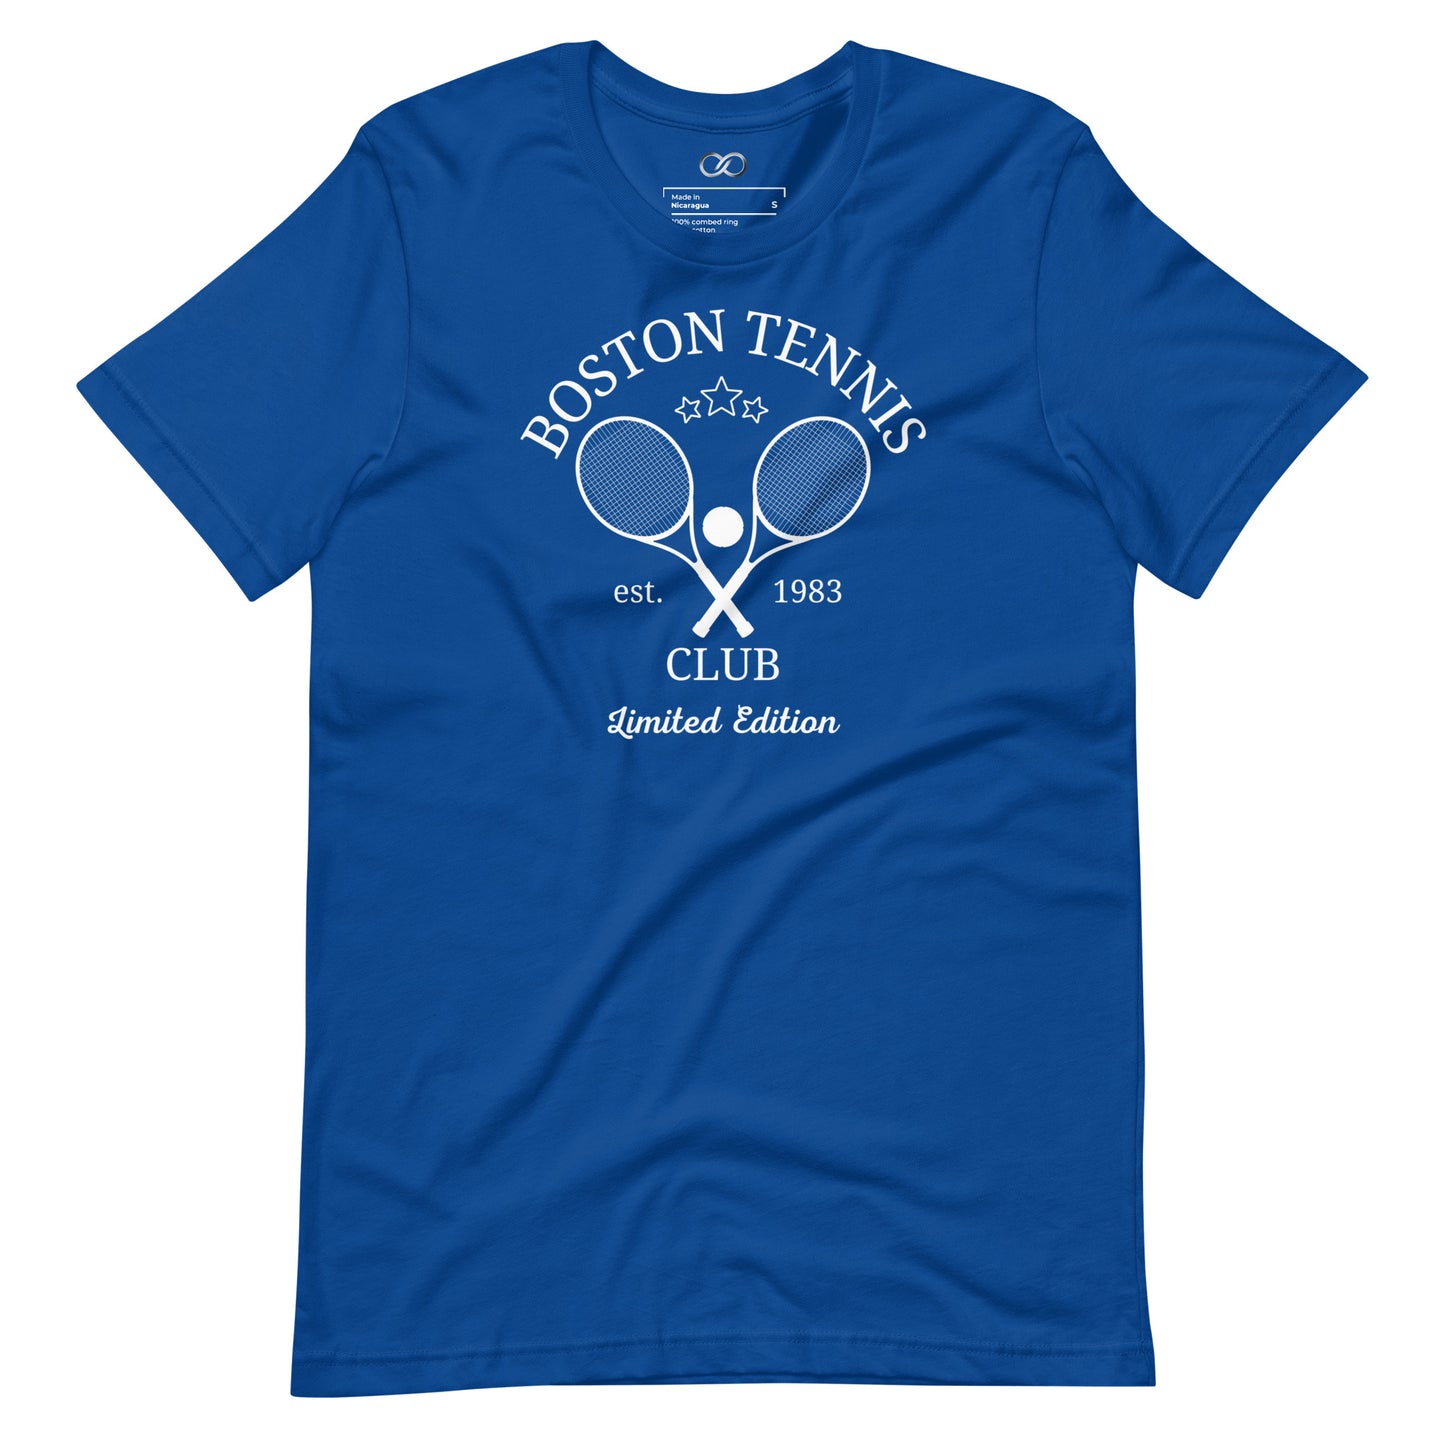 Boston Tennis Club Tee - Retro Sporty Print T-Shirt